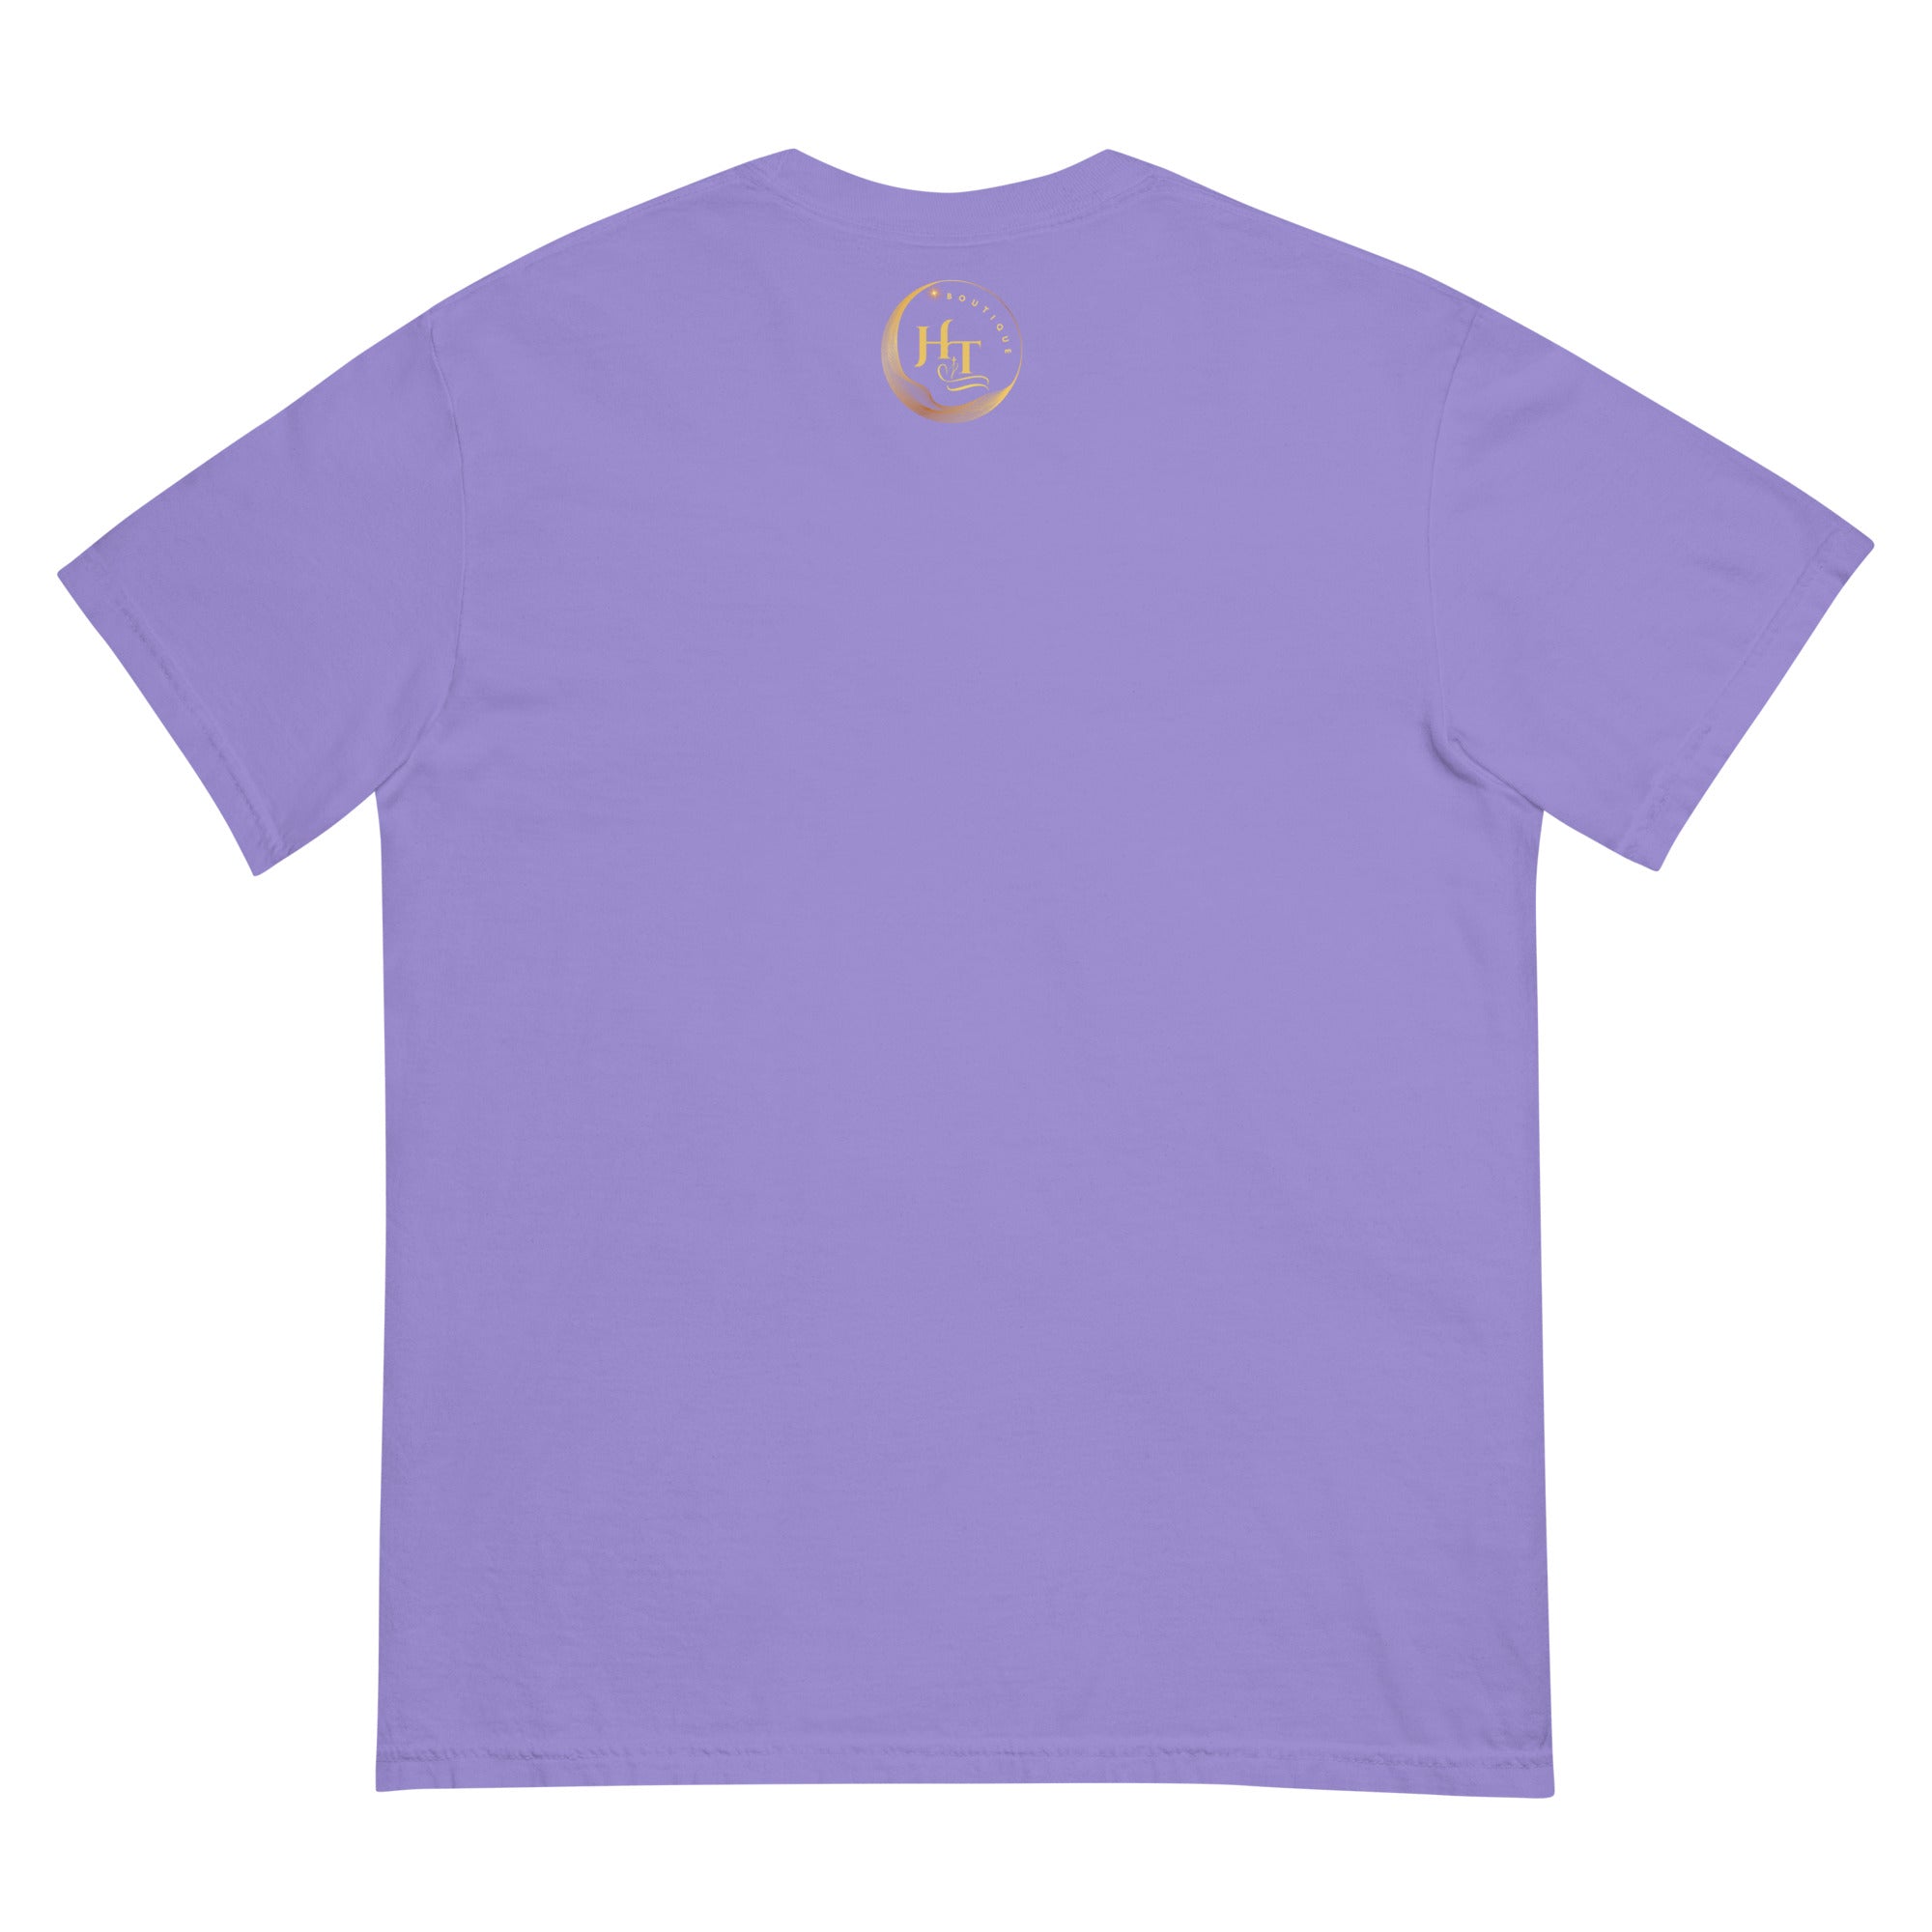 Libra Unisex garment-dyed heavyweight t-shirt